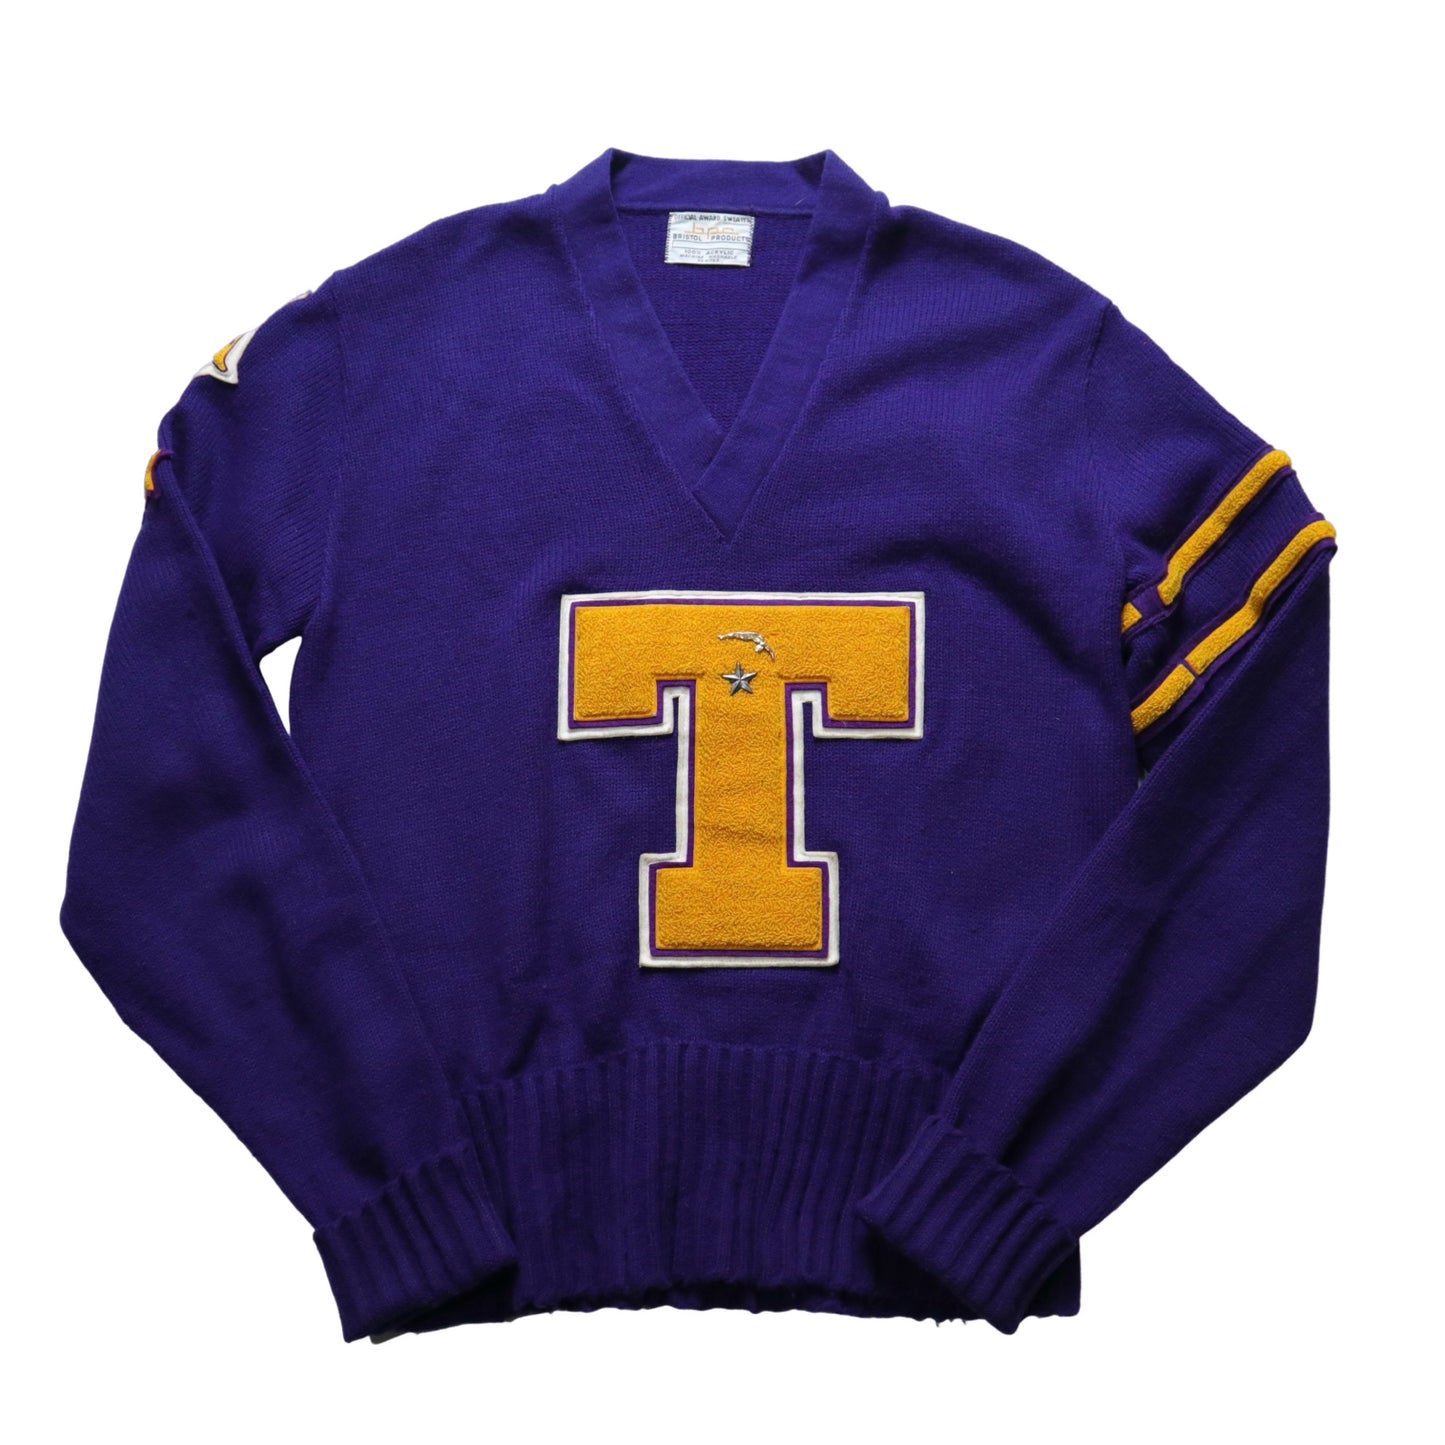 1970年代 Varsity Sweater パッチ「T」 パープル V ネック キャンパス セーター